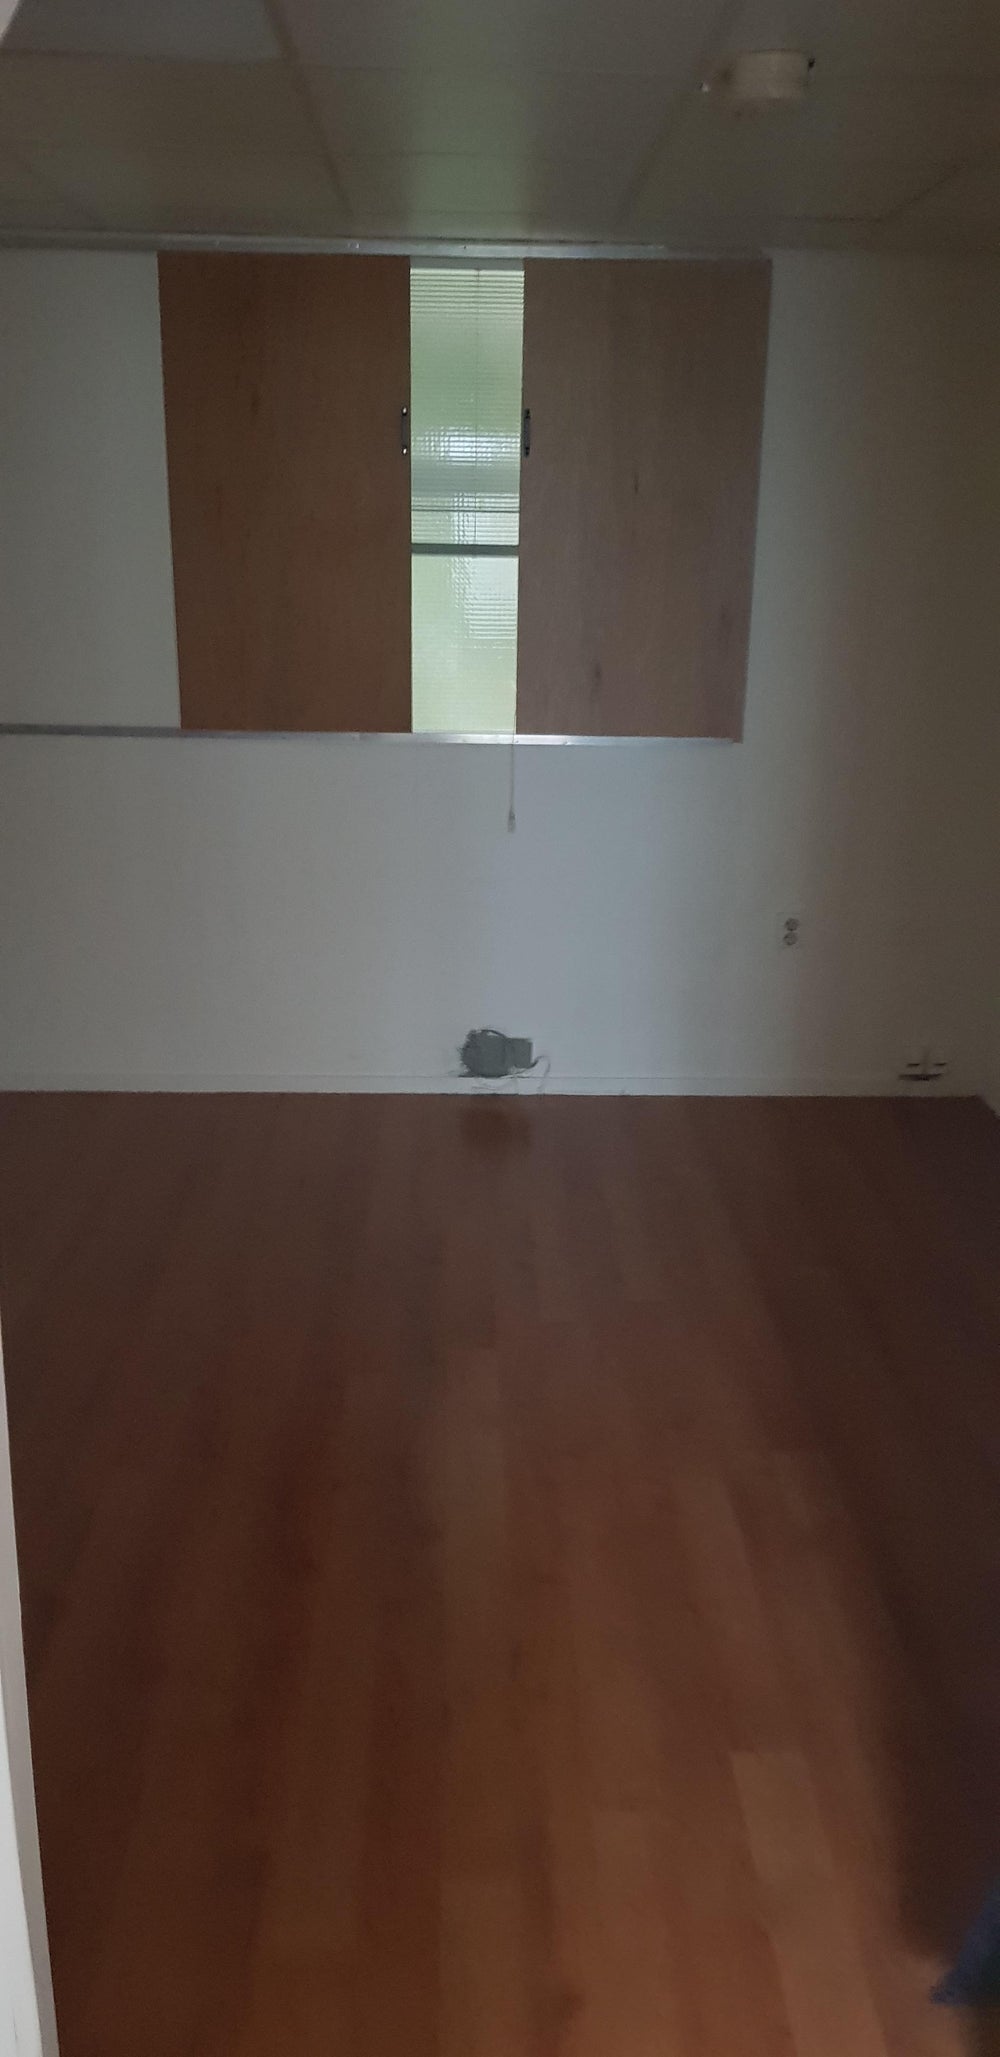 Bekijk foto 1/7 van apartment in Leeuwarden